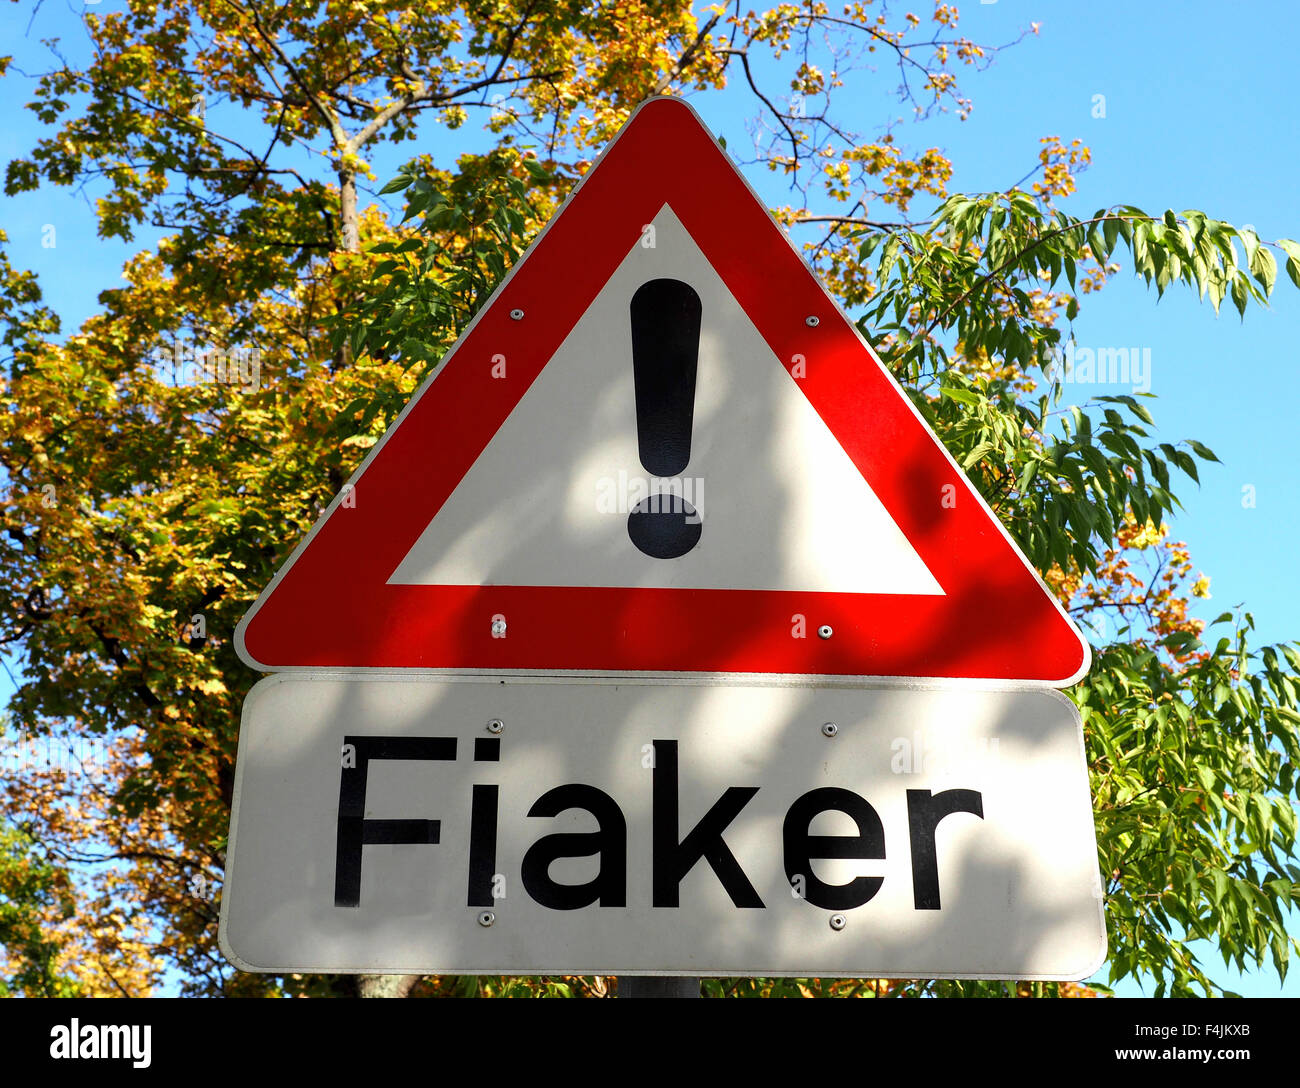 Fiaker signe, calèches avertissement, Vienne, Autriche. Banque D'Images